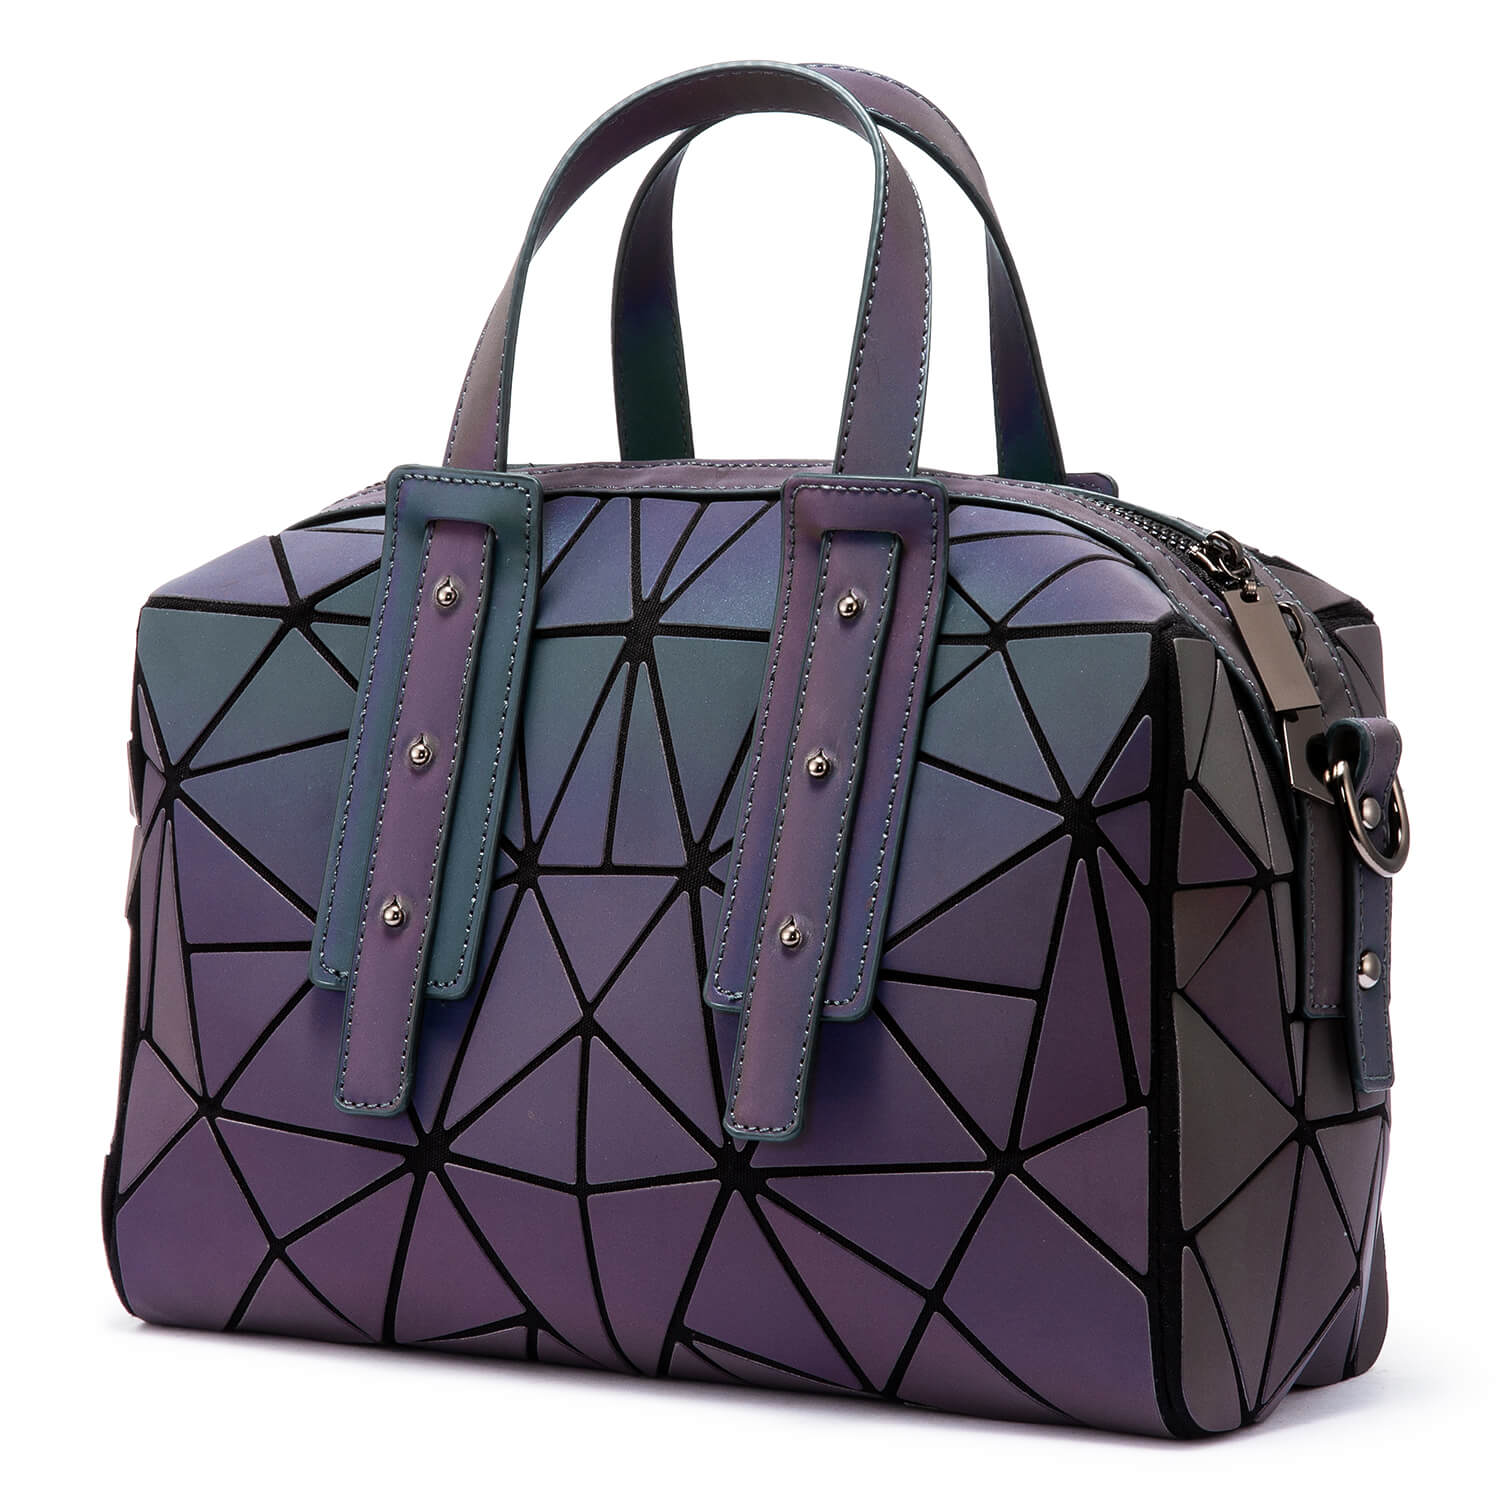 Buy Tote Bag for Women Geometric Lattice Handbag Girls Shoulder Bag  Luminous Purse Online at desertcartNorway